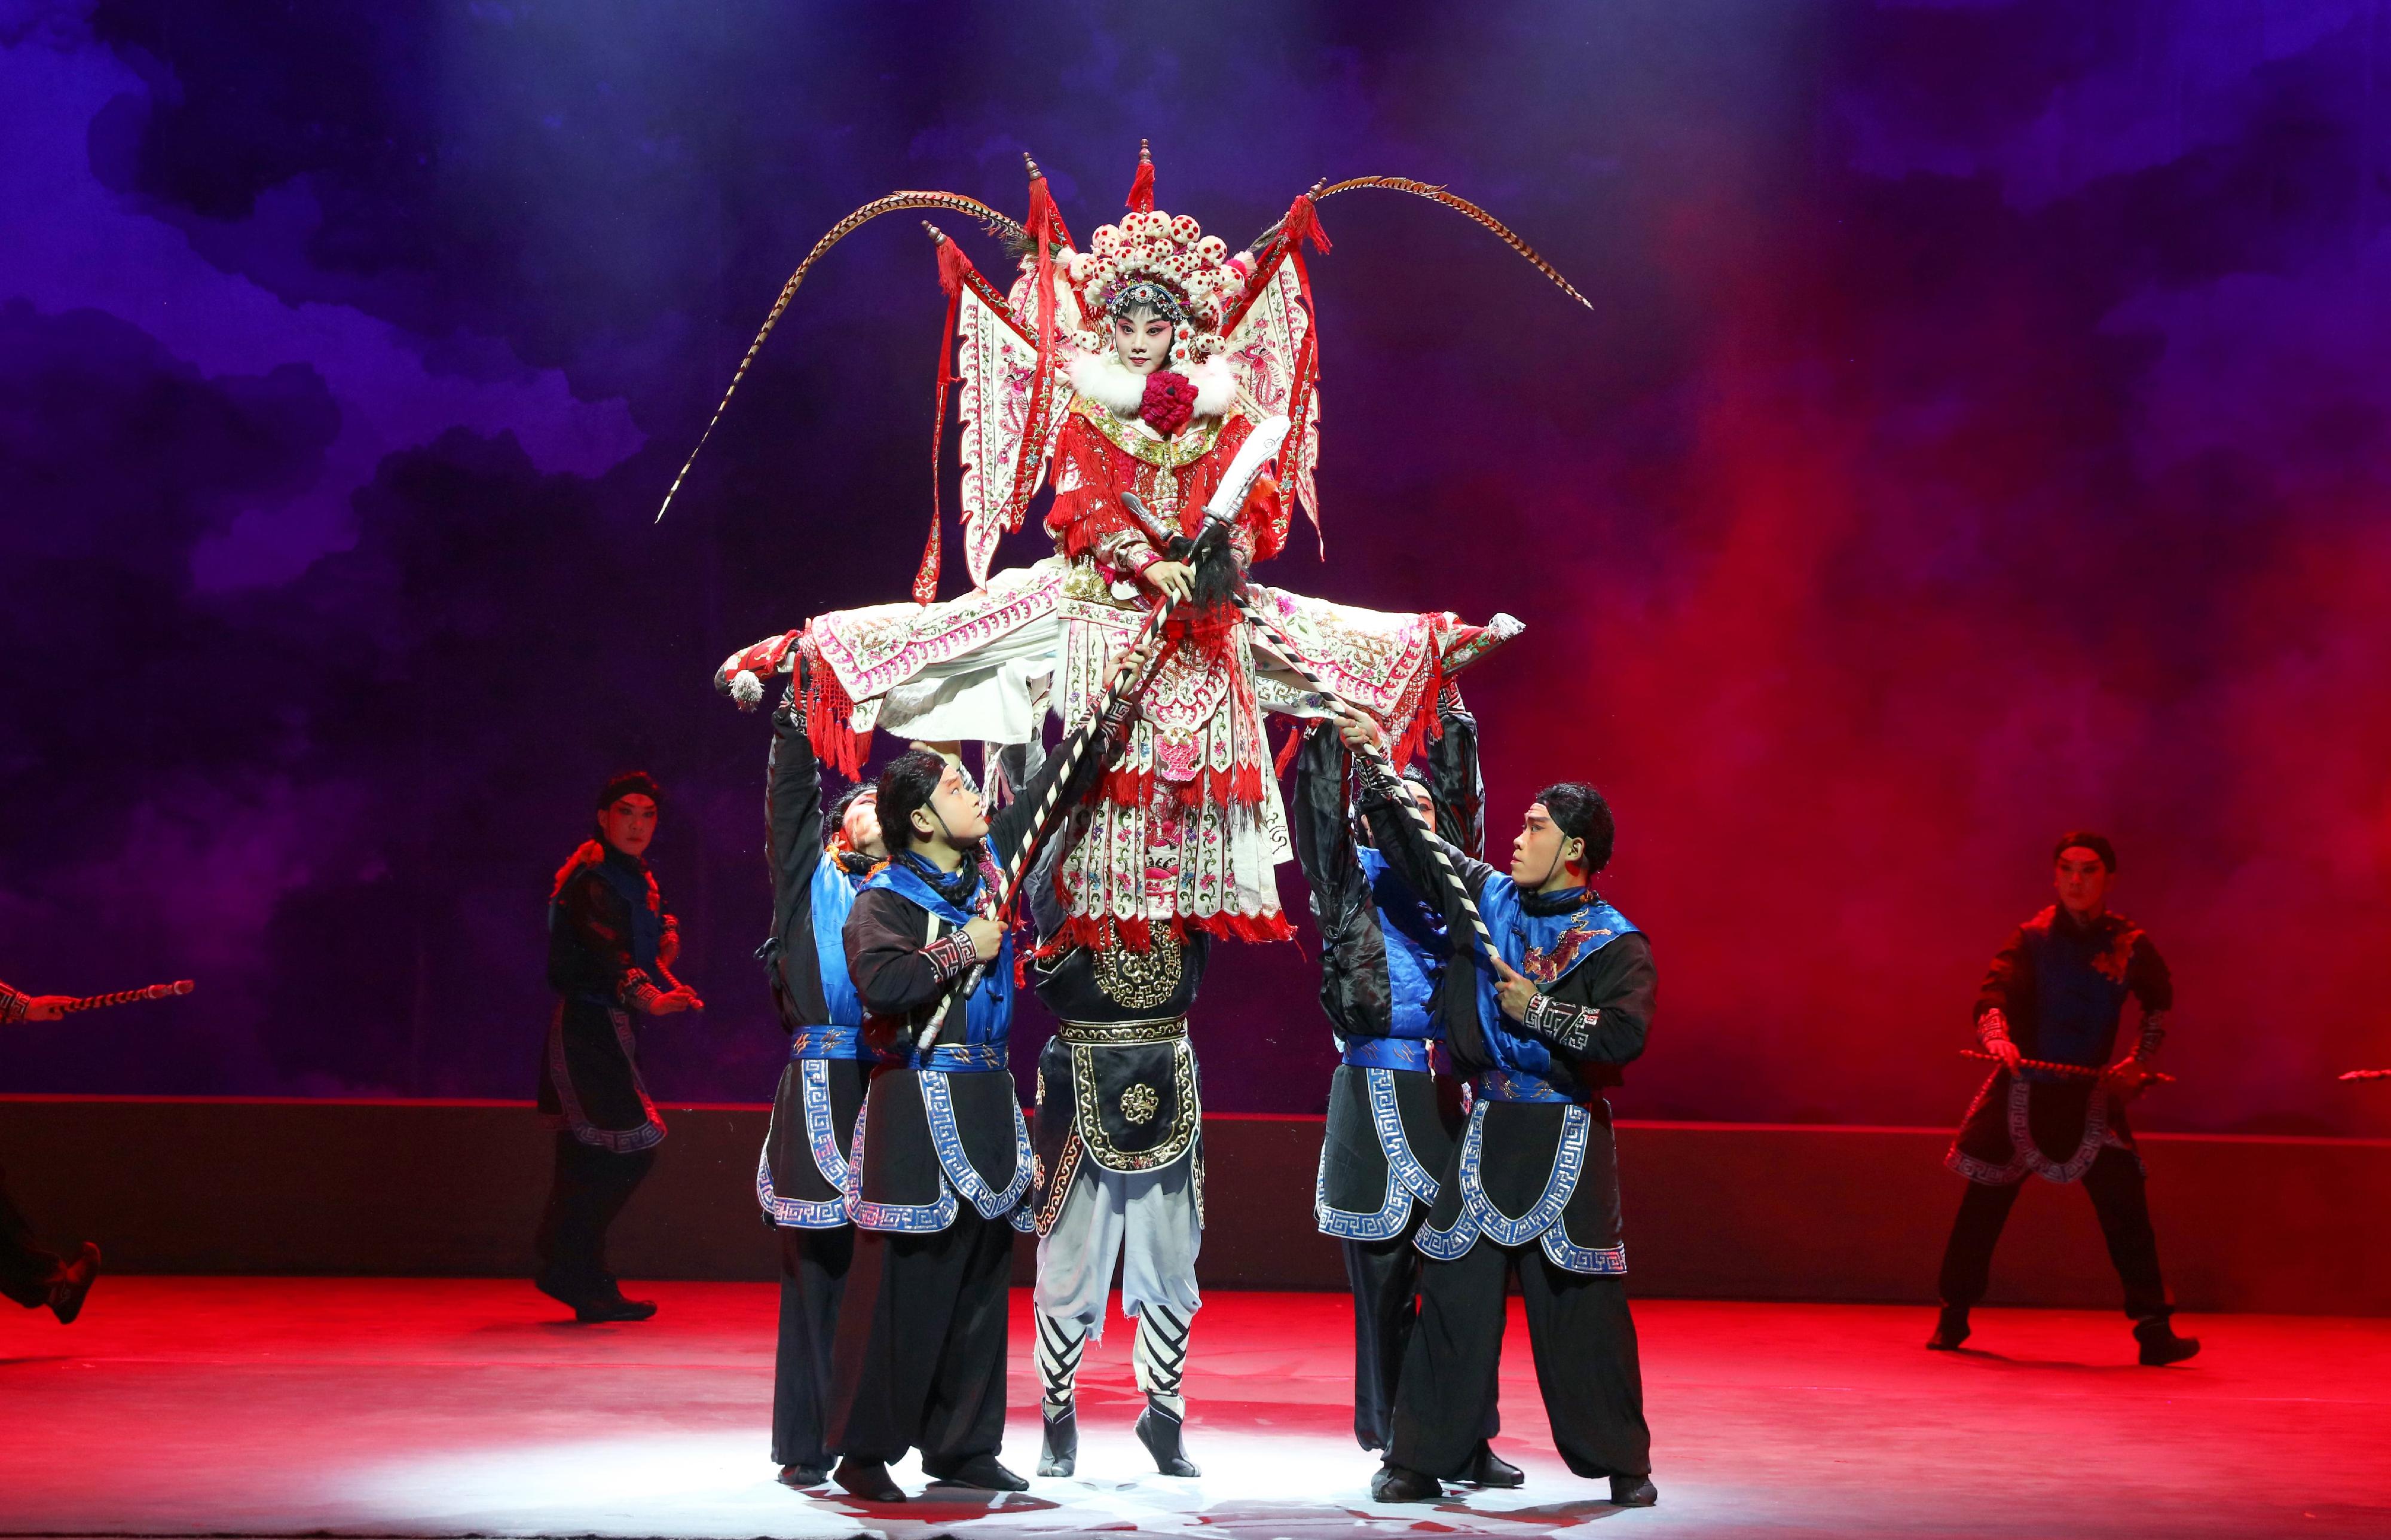 首屆-中華文化節-六月至九月舉辦-以光影韻律之美傳華夏文化之盛